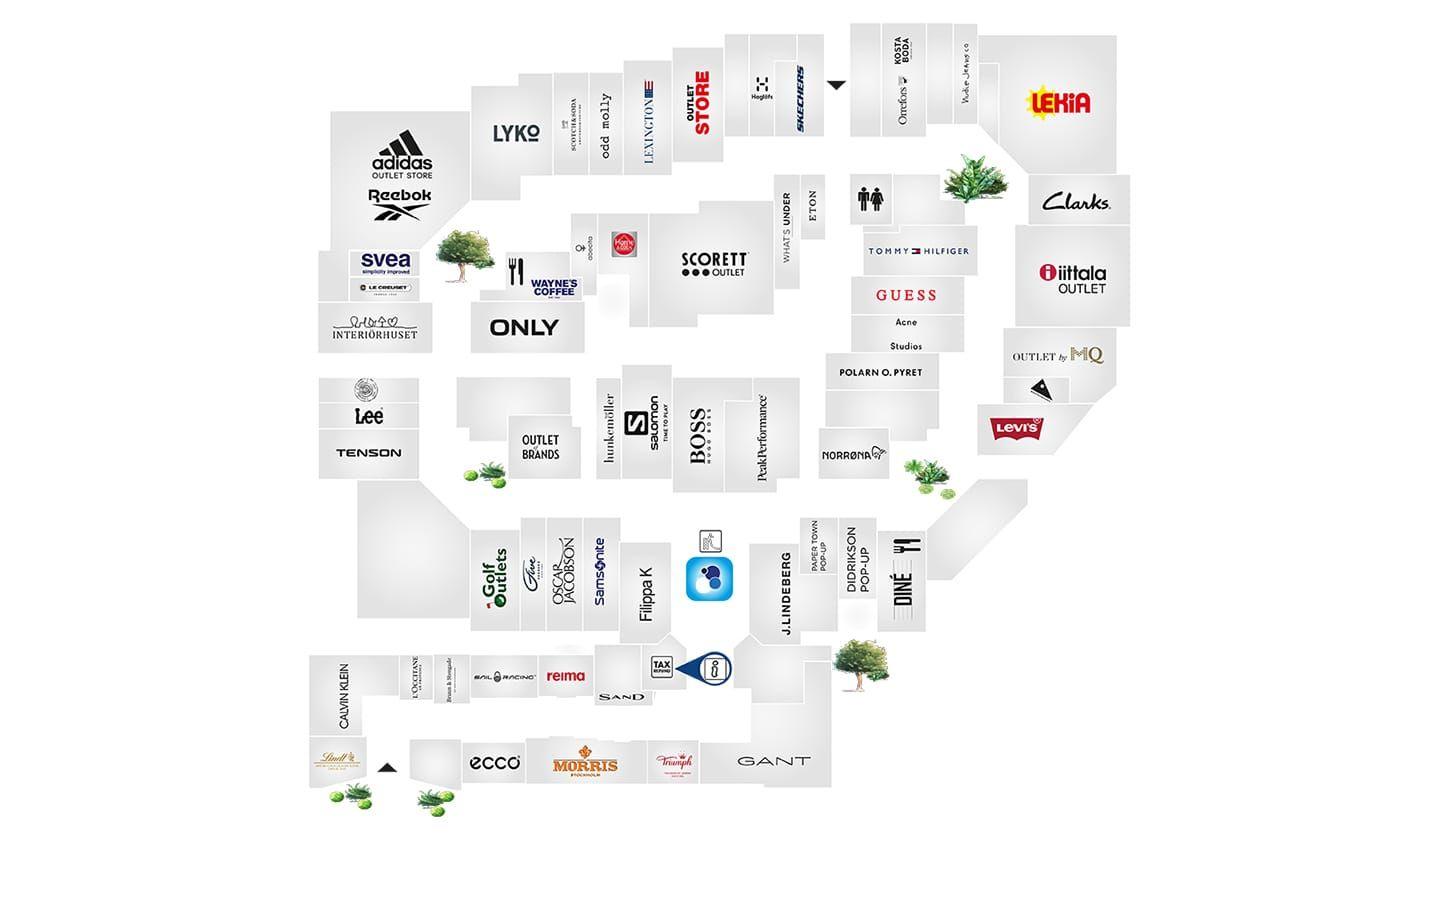 Klicka upp kartan i helskärm för att få en bättre överblick över Hede Fashion Outlet.